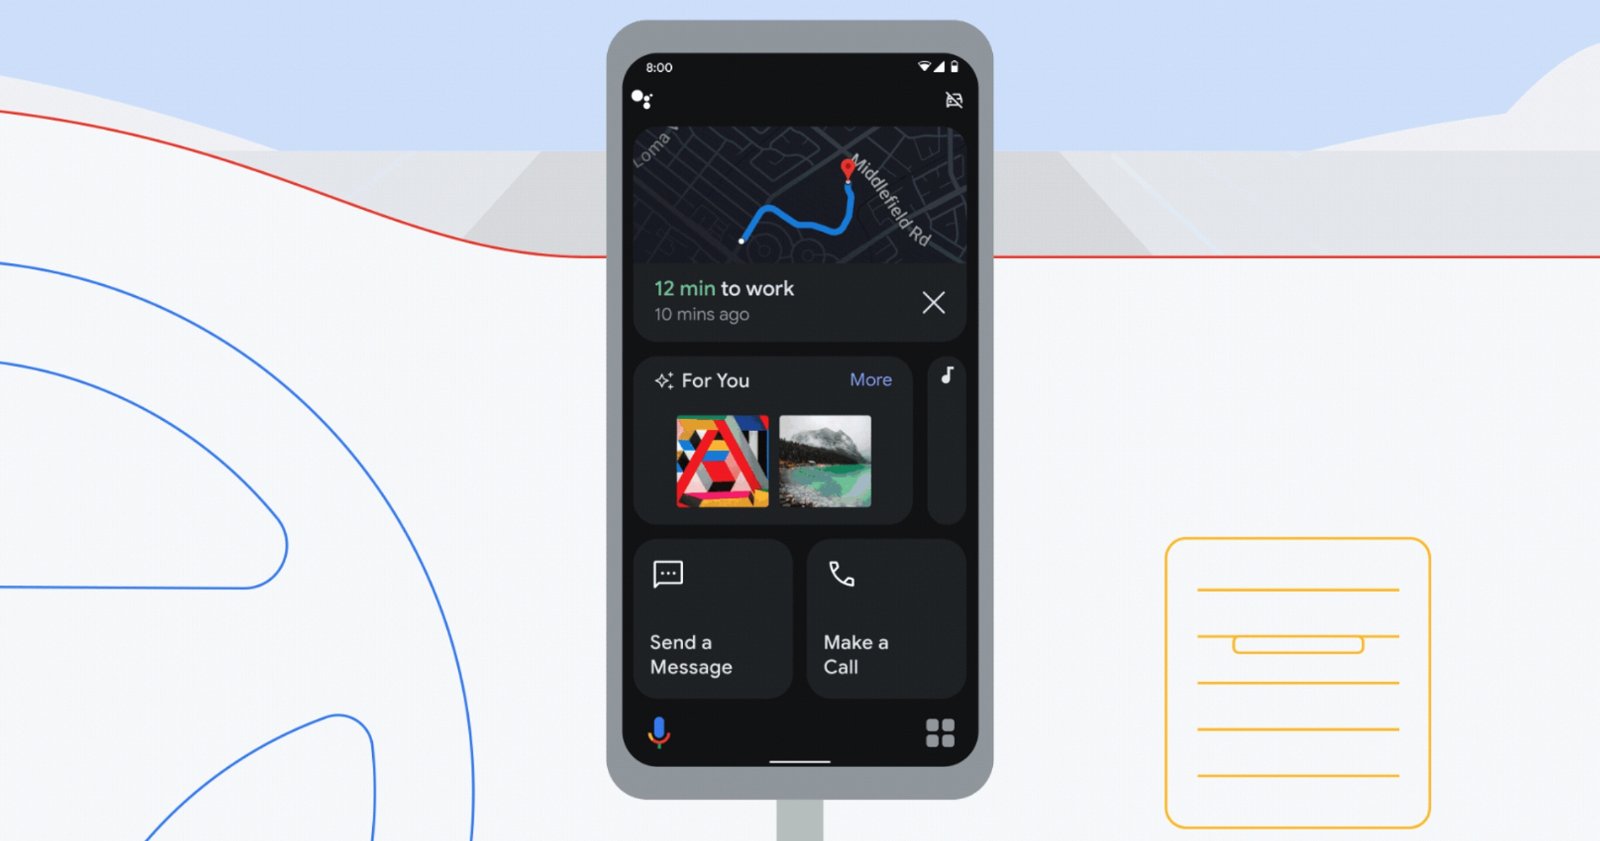 Captura de pantalla del modo de conducción del Asistente de Google en un móvil Android.